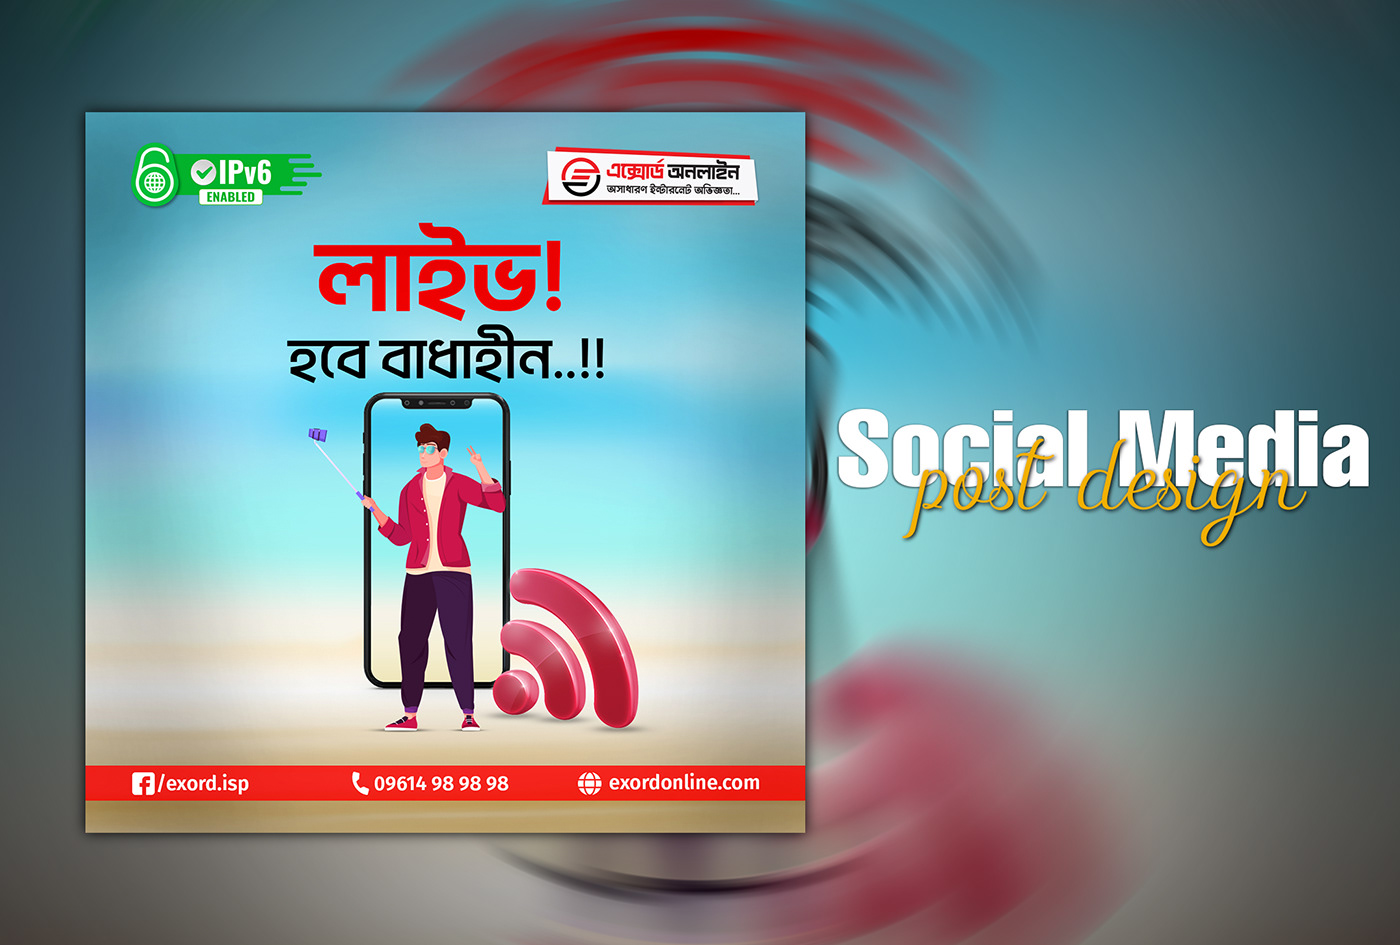 Social media post Social Media Post Design Social Media Banner banner design facebook post Instagram Post social media designer graphics